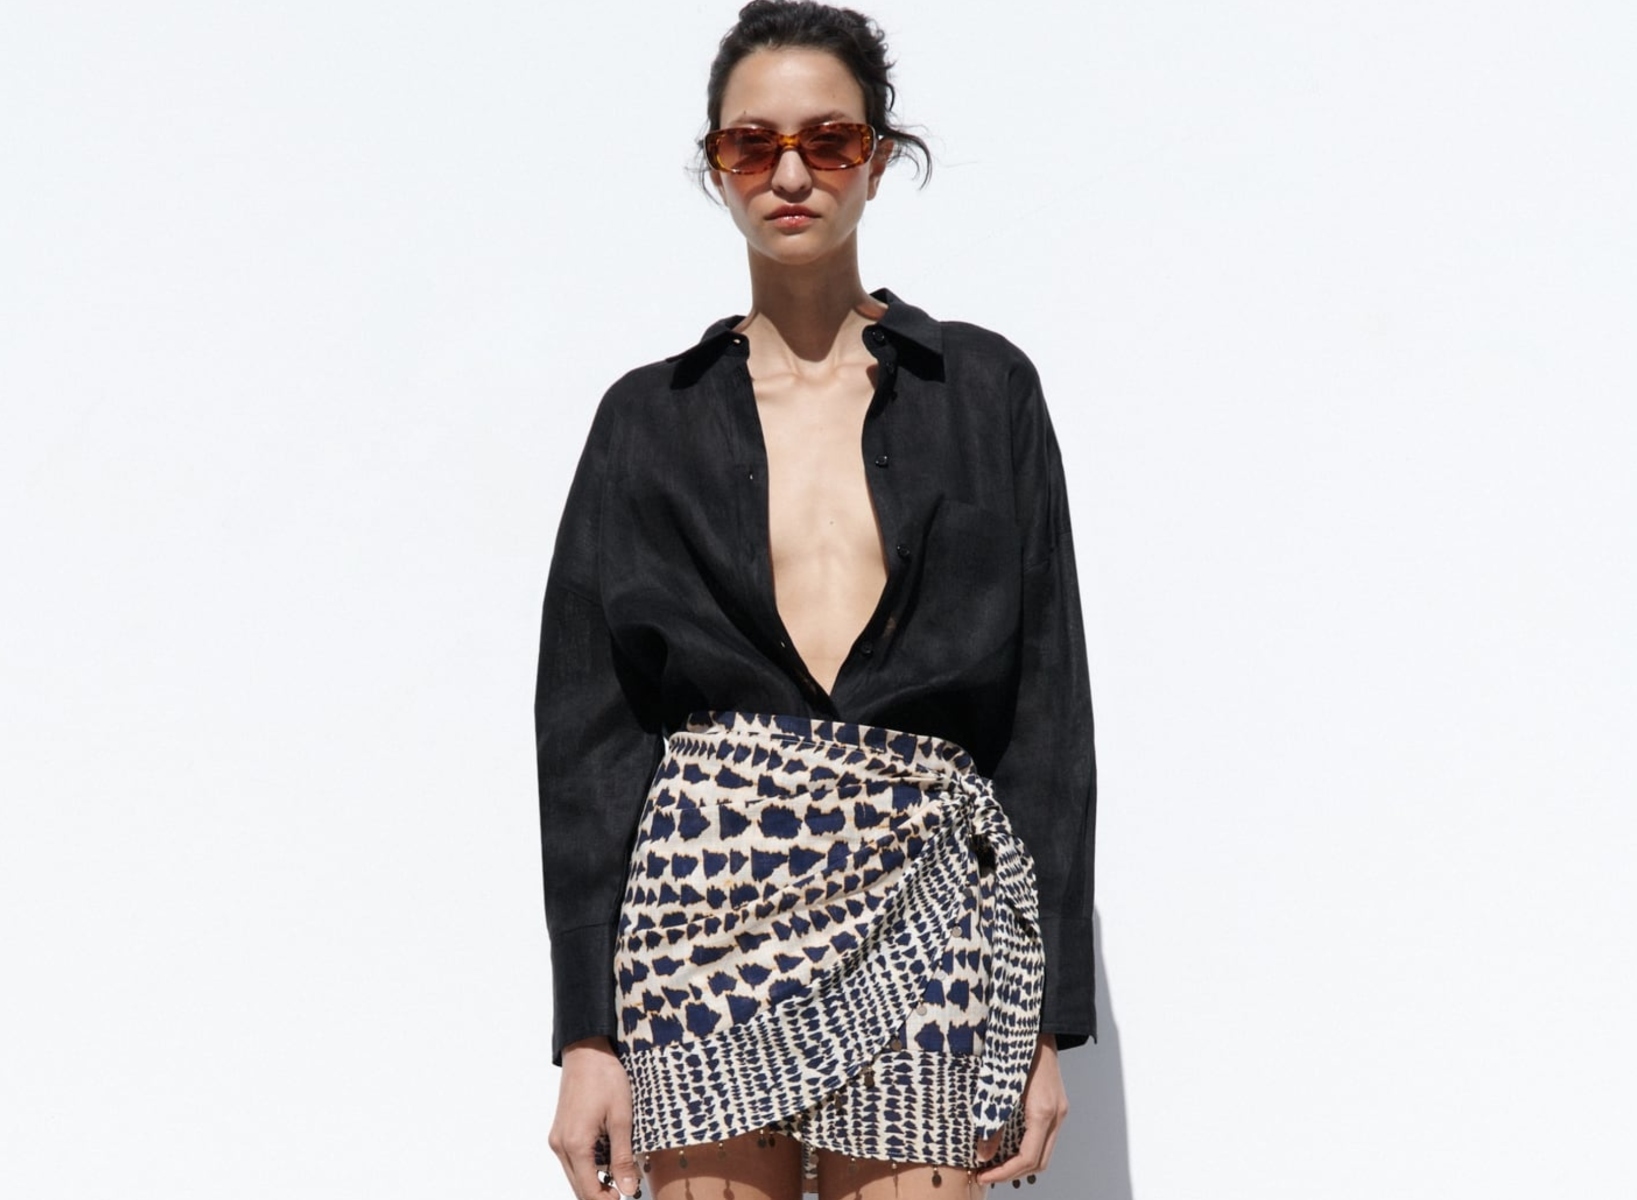 Electricista exposición Arrastrarse 12 faldas de Zara y Mango para la Feria de Abril que estilizan y favorecen  | Moda